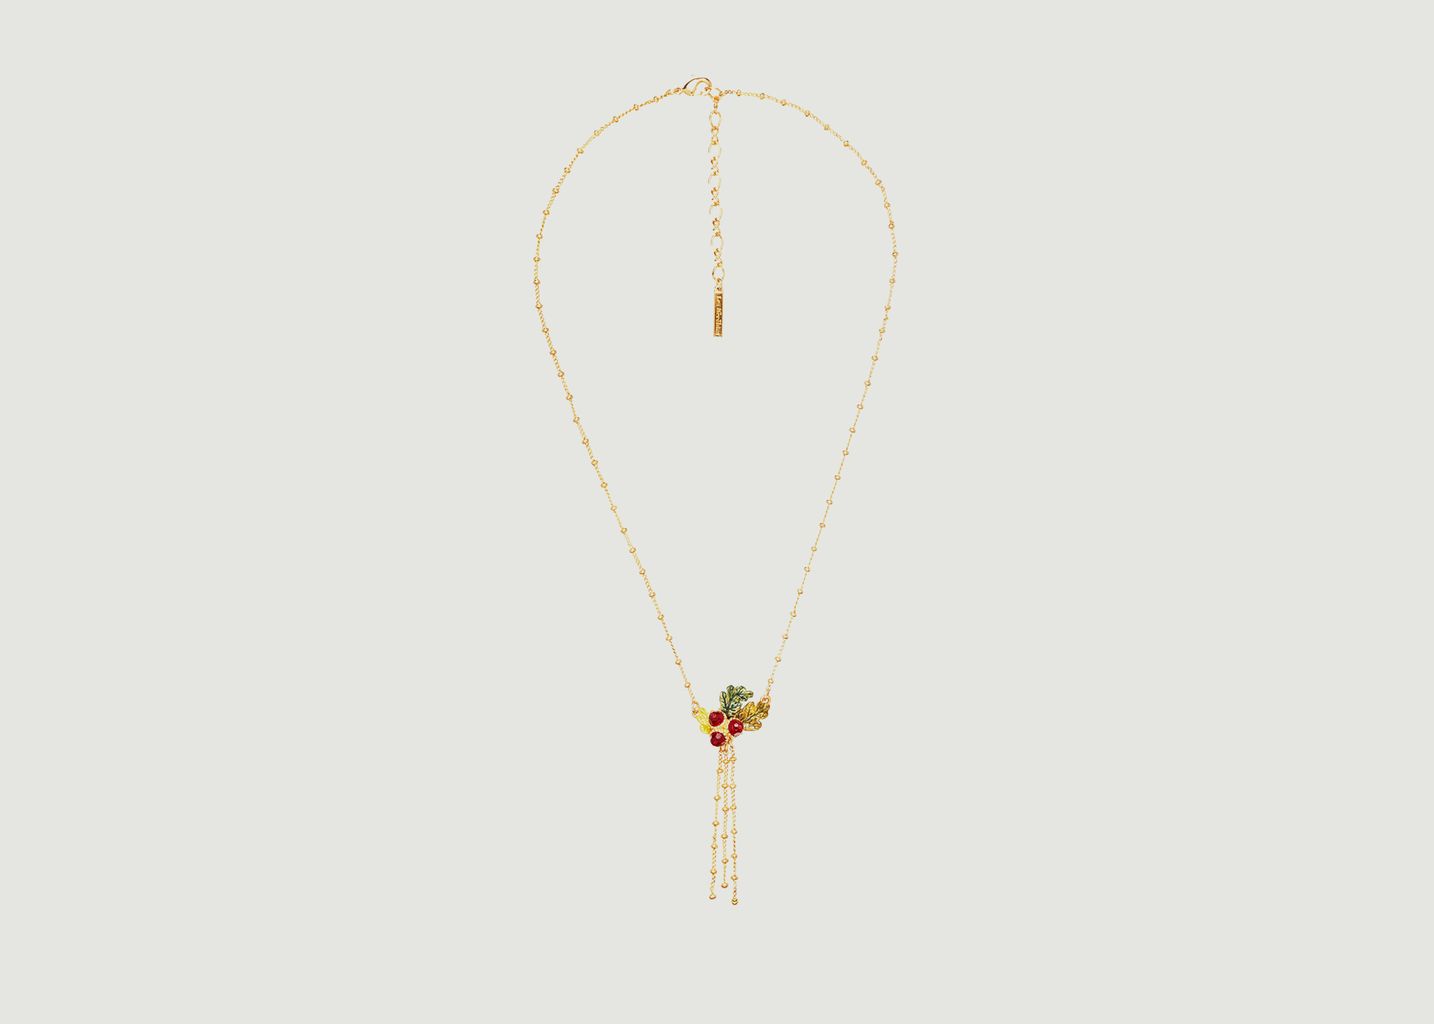 Acorns and oak leaves and chains pendant necklace - Les Néréides